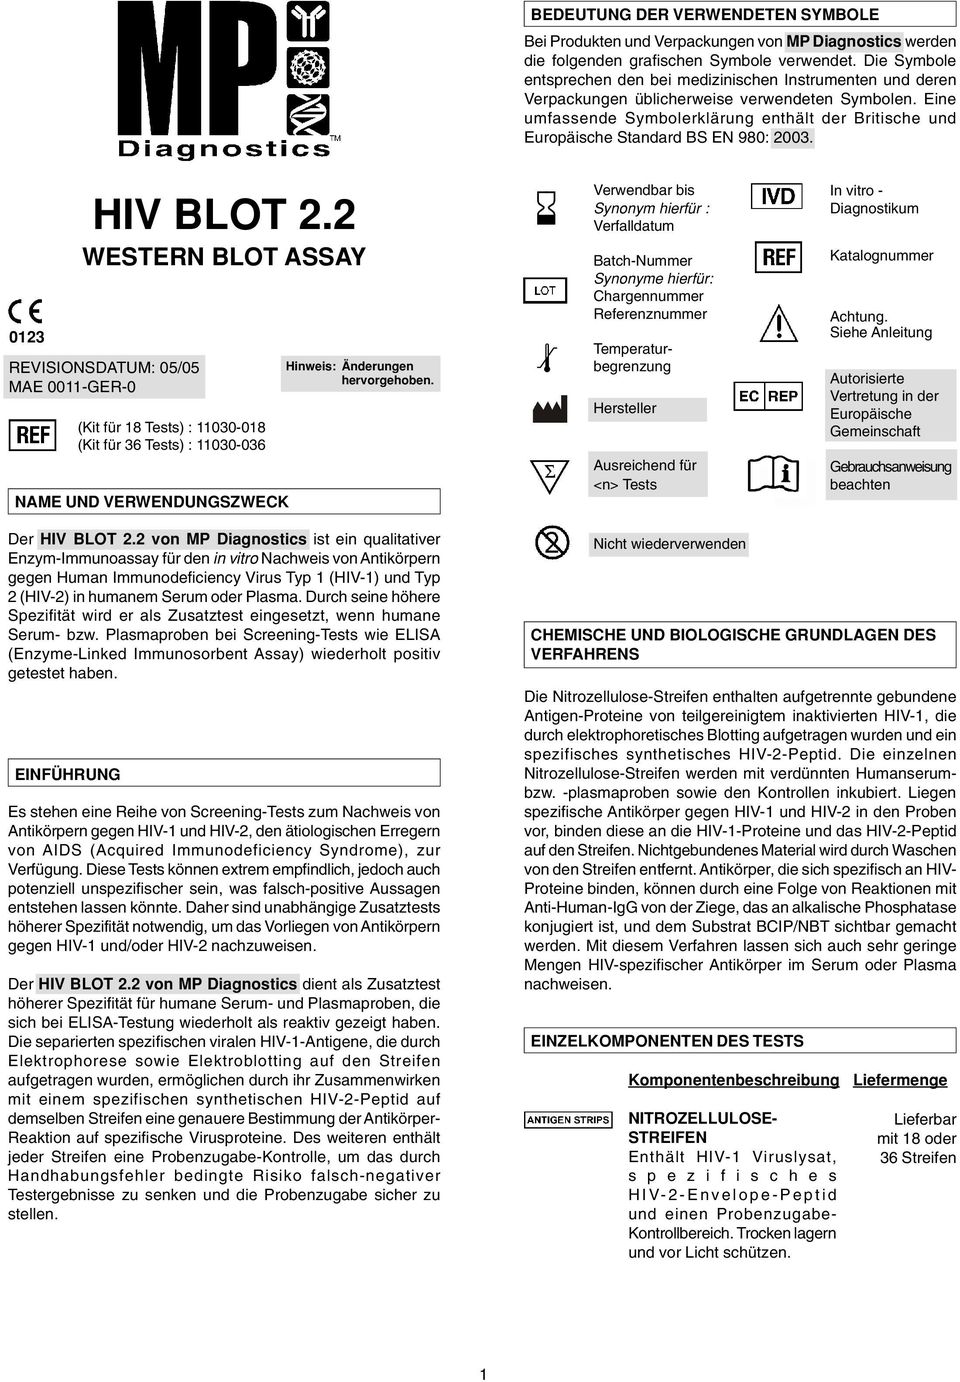 Eine umfassende Symbolerklärung enthält der Britische und Europäische Standard BS EN 980: 2003. 0123 HIV BLOT 2.